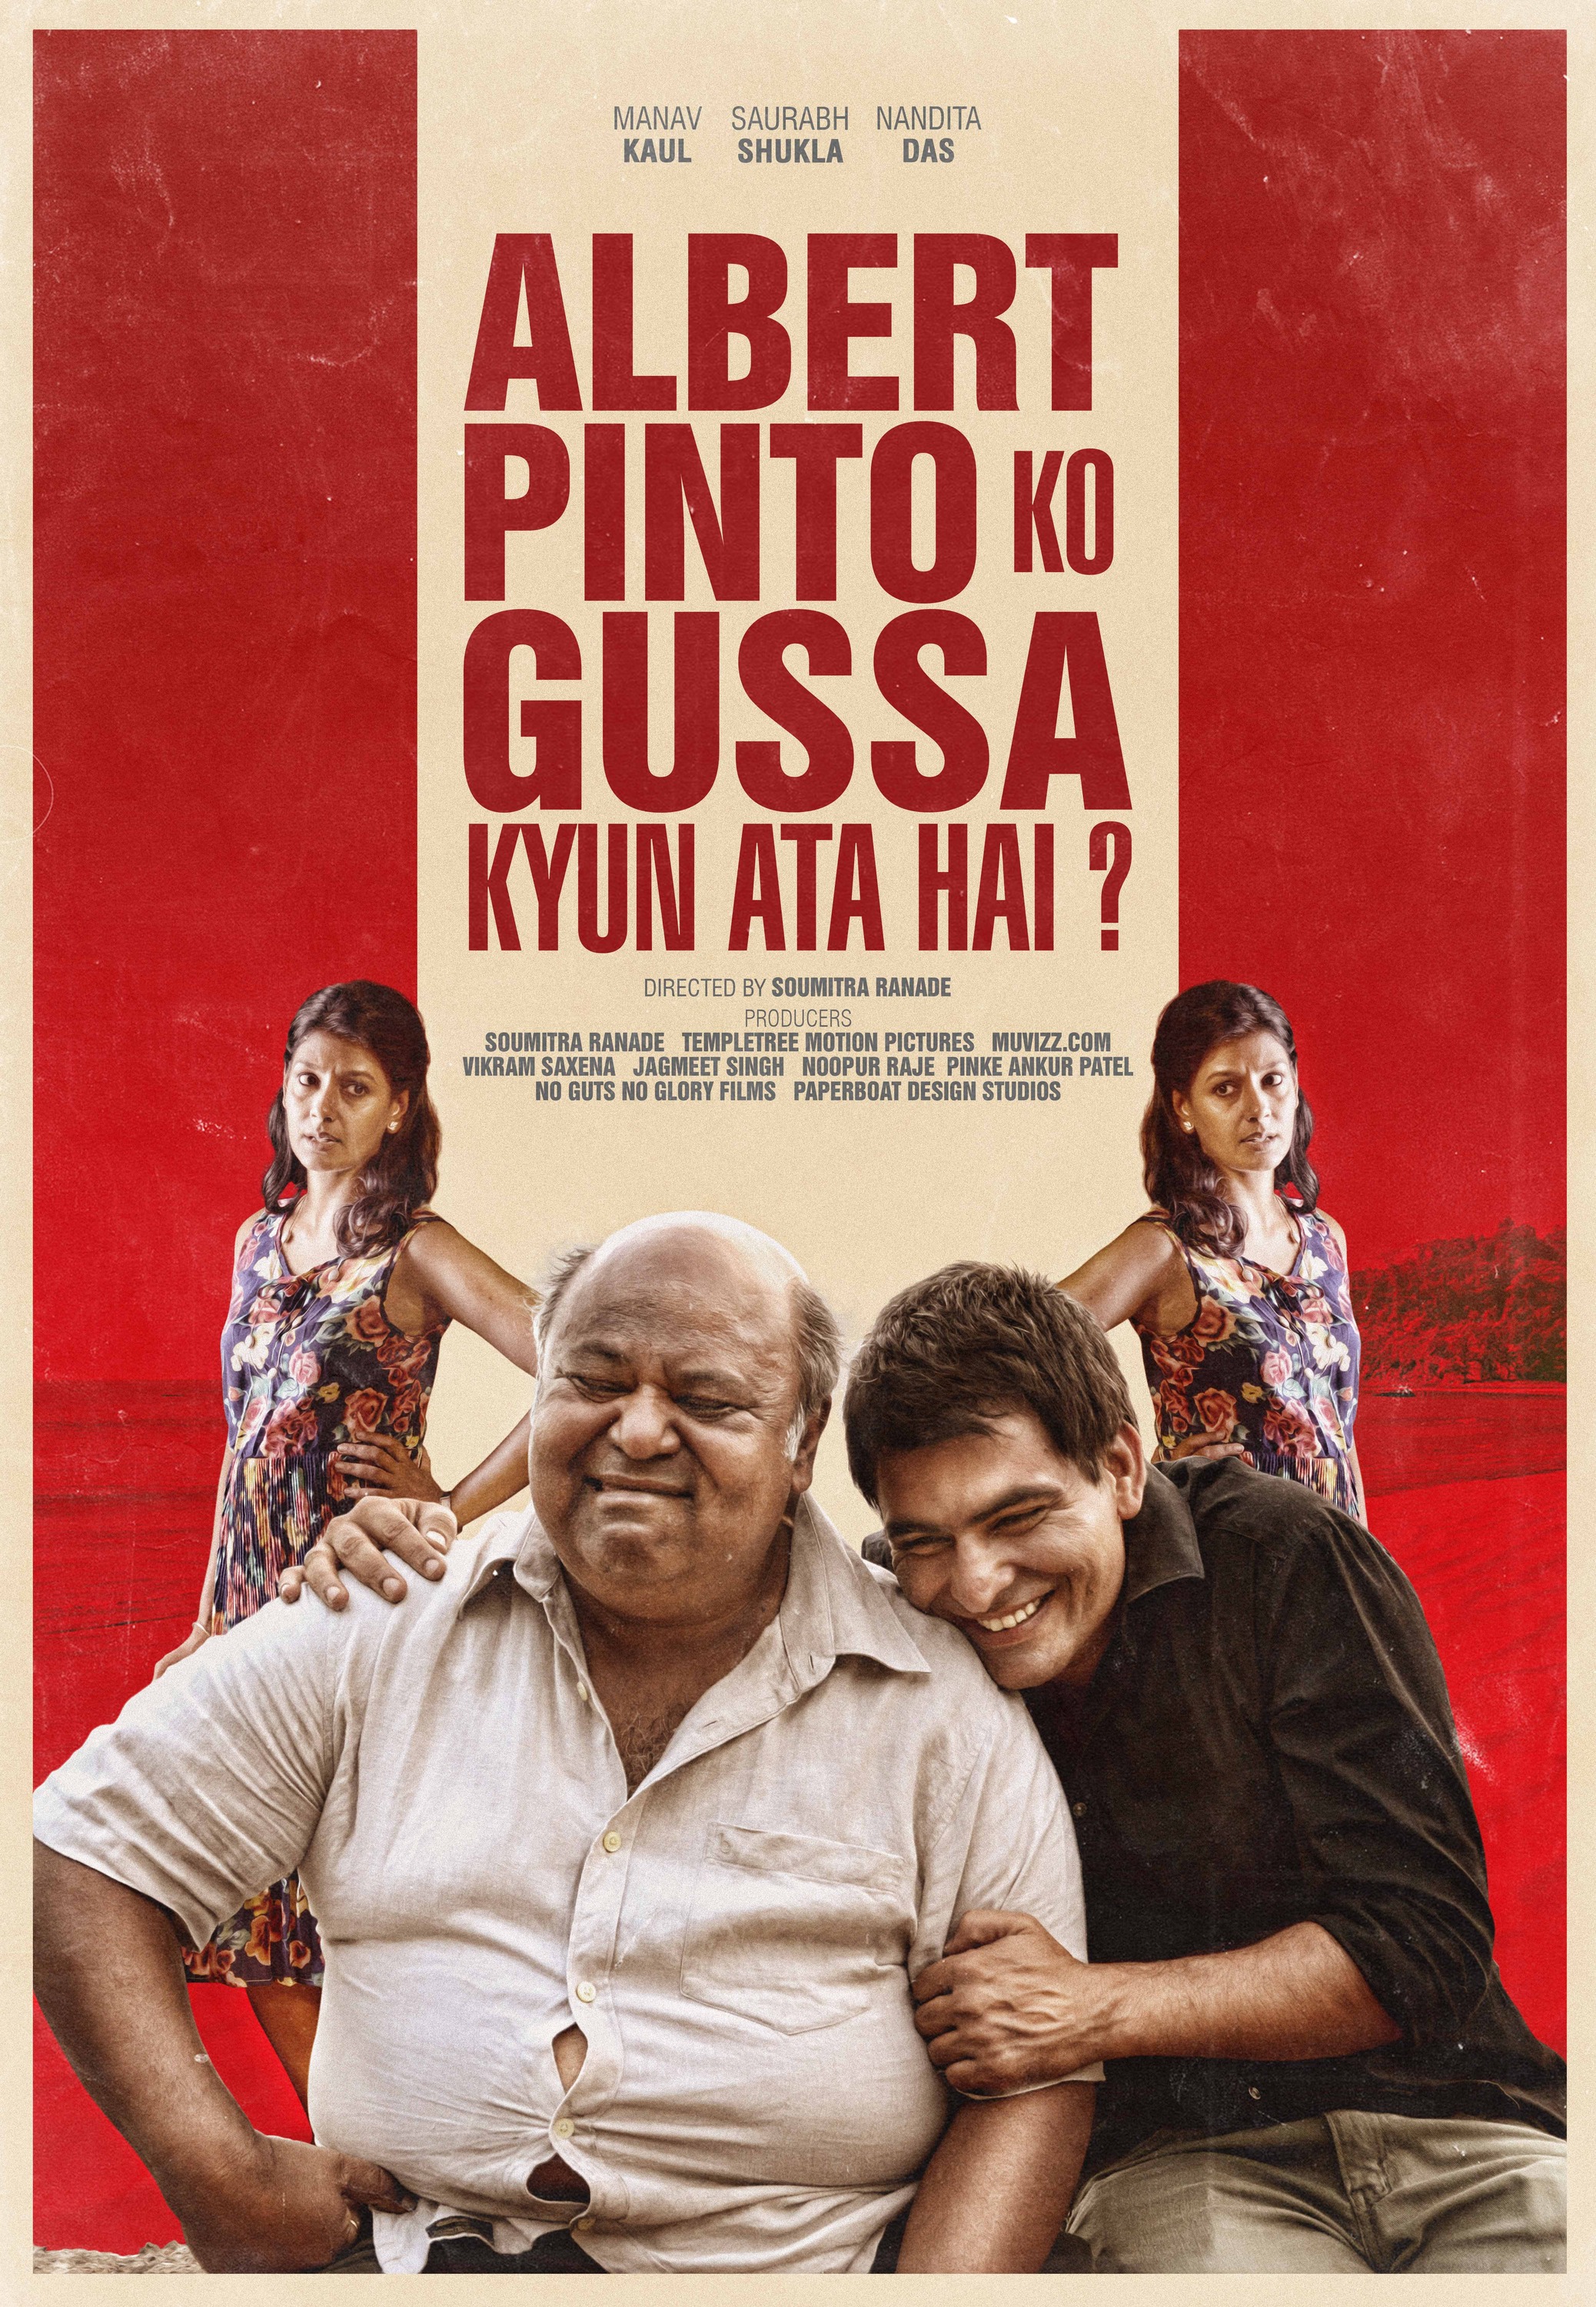 Mega Sized Movie Poster Image for Albert Pinto Ko Gussa Kyun Aata Hai? (#2 of 2)